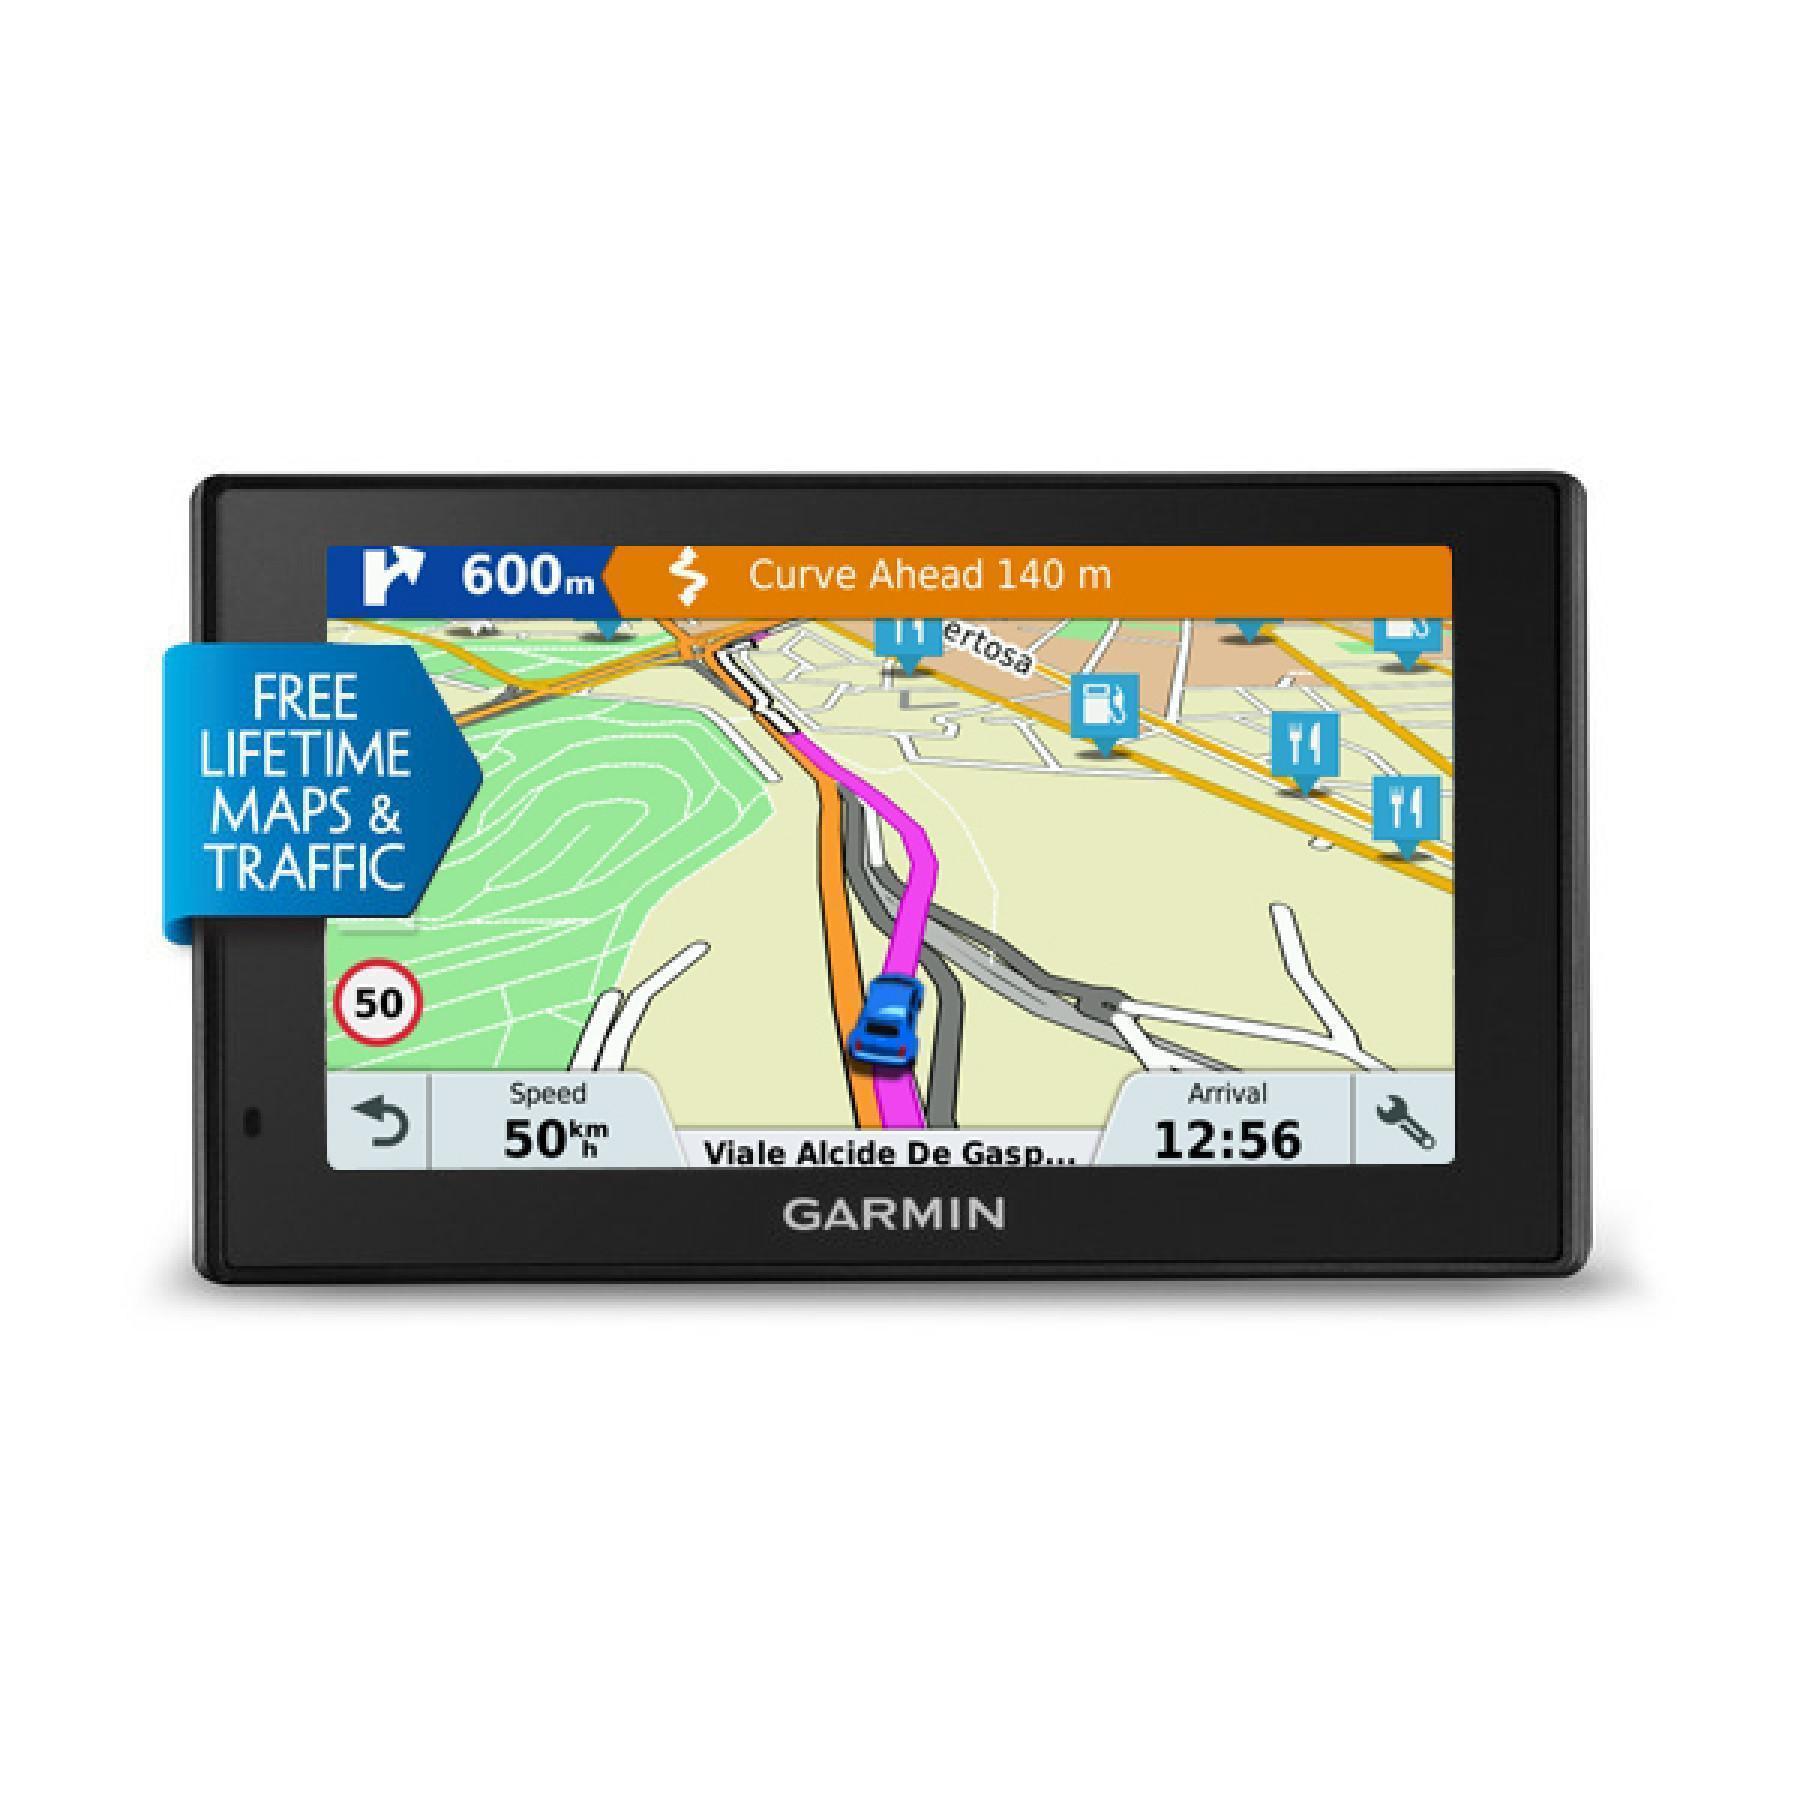 GPS Garmin drivesmart 51 lmt-s europe du sud